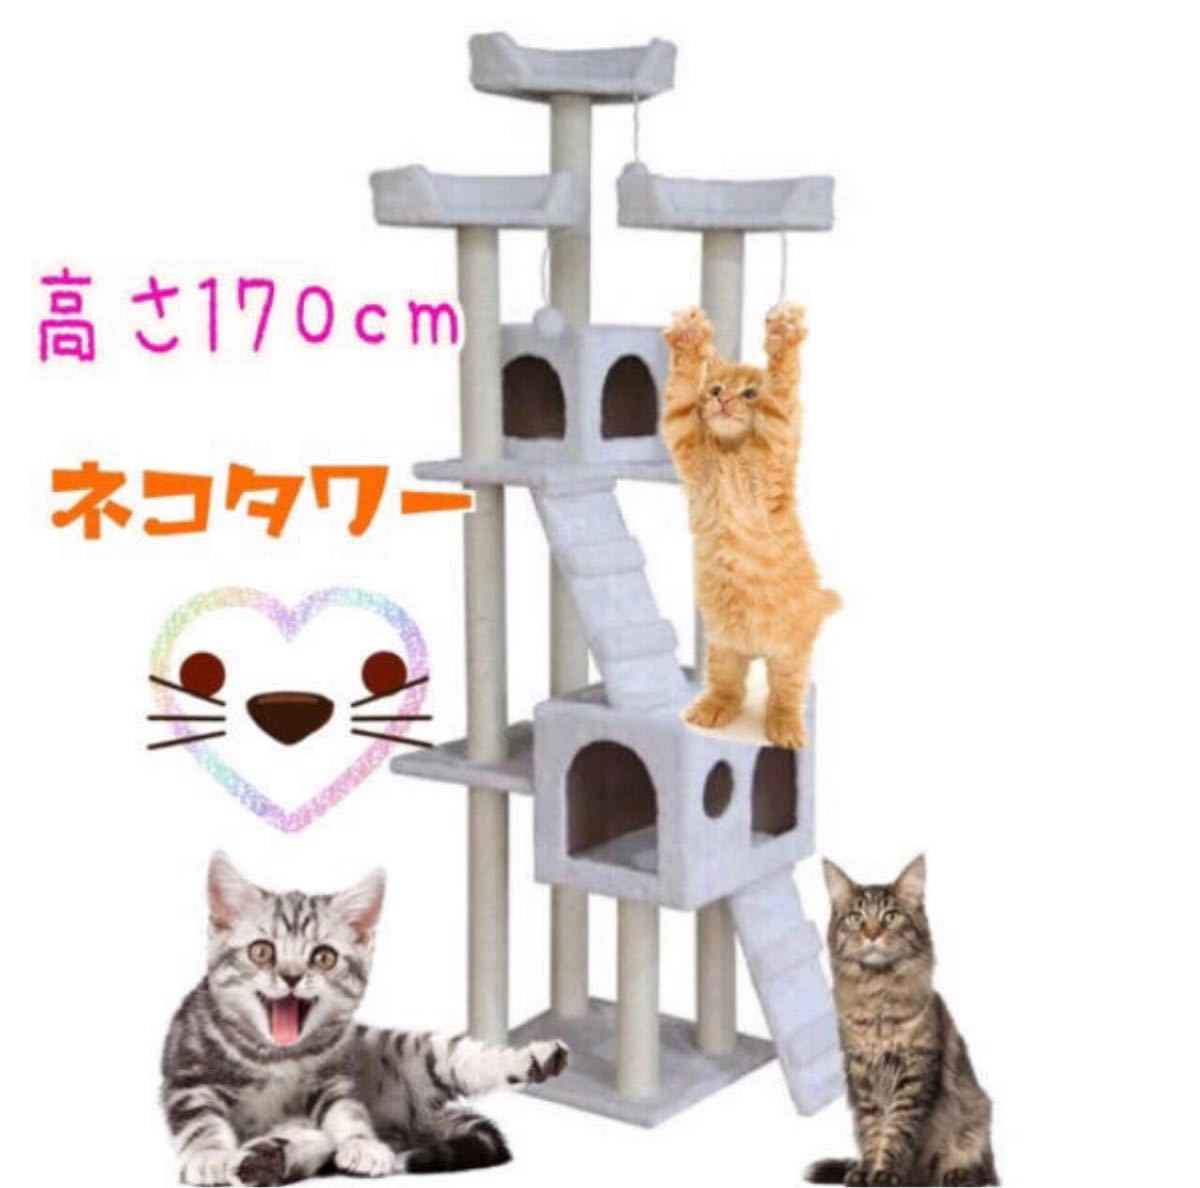 キャットタワー ピンク 猫 Cat Tower ワイドサイズ 高さ170cm